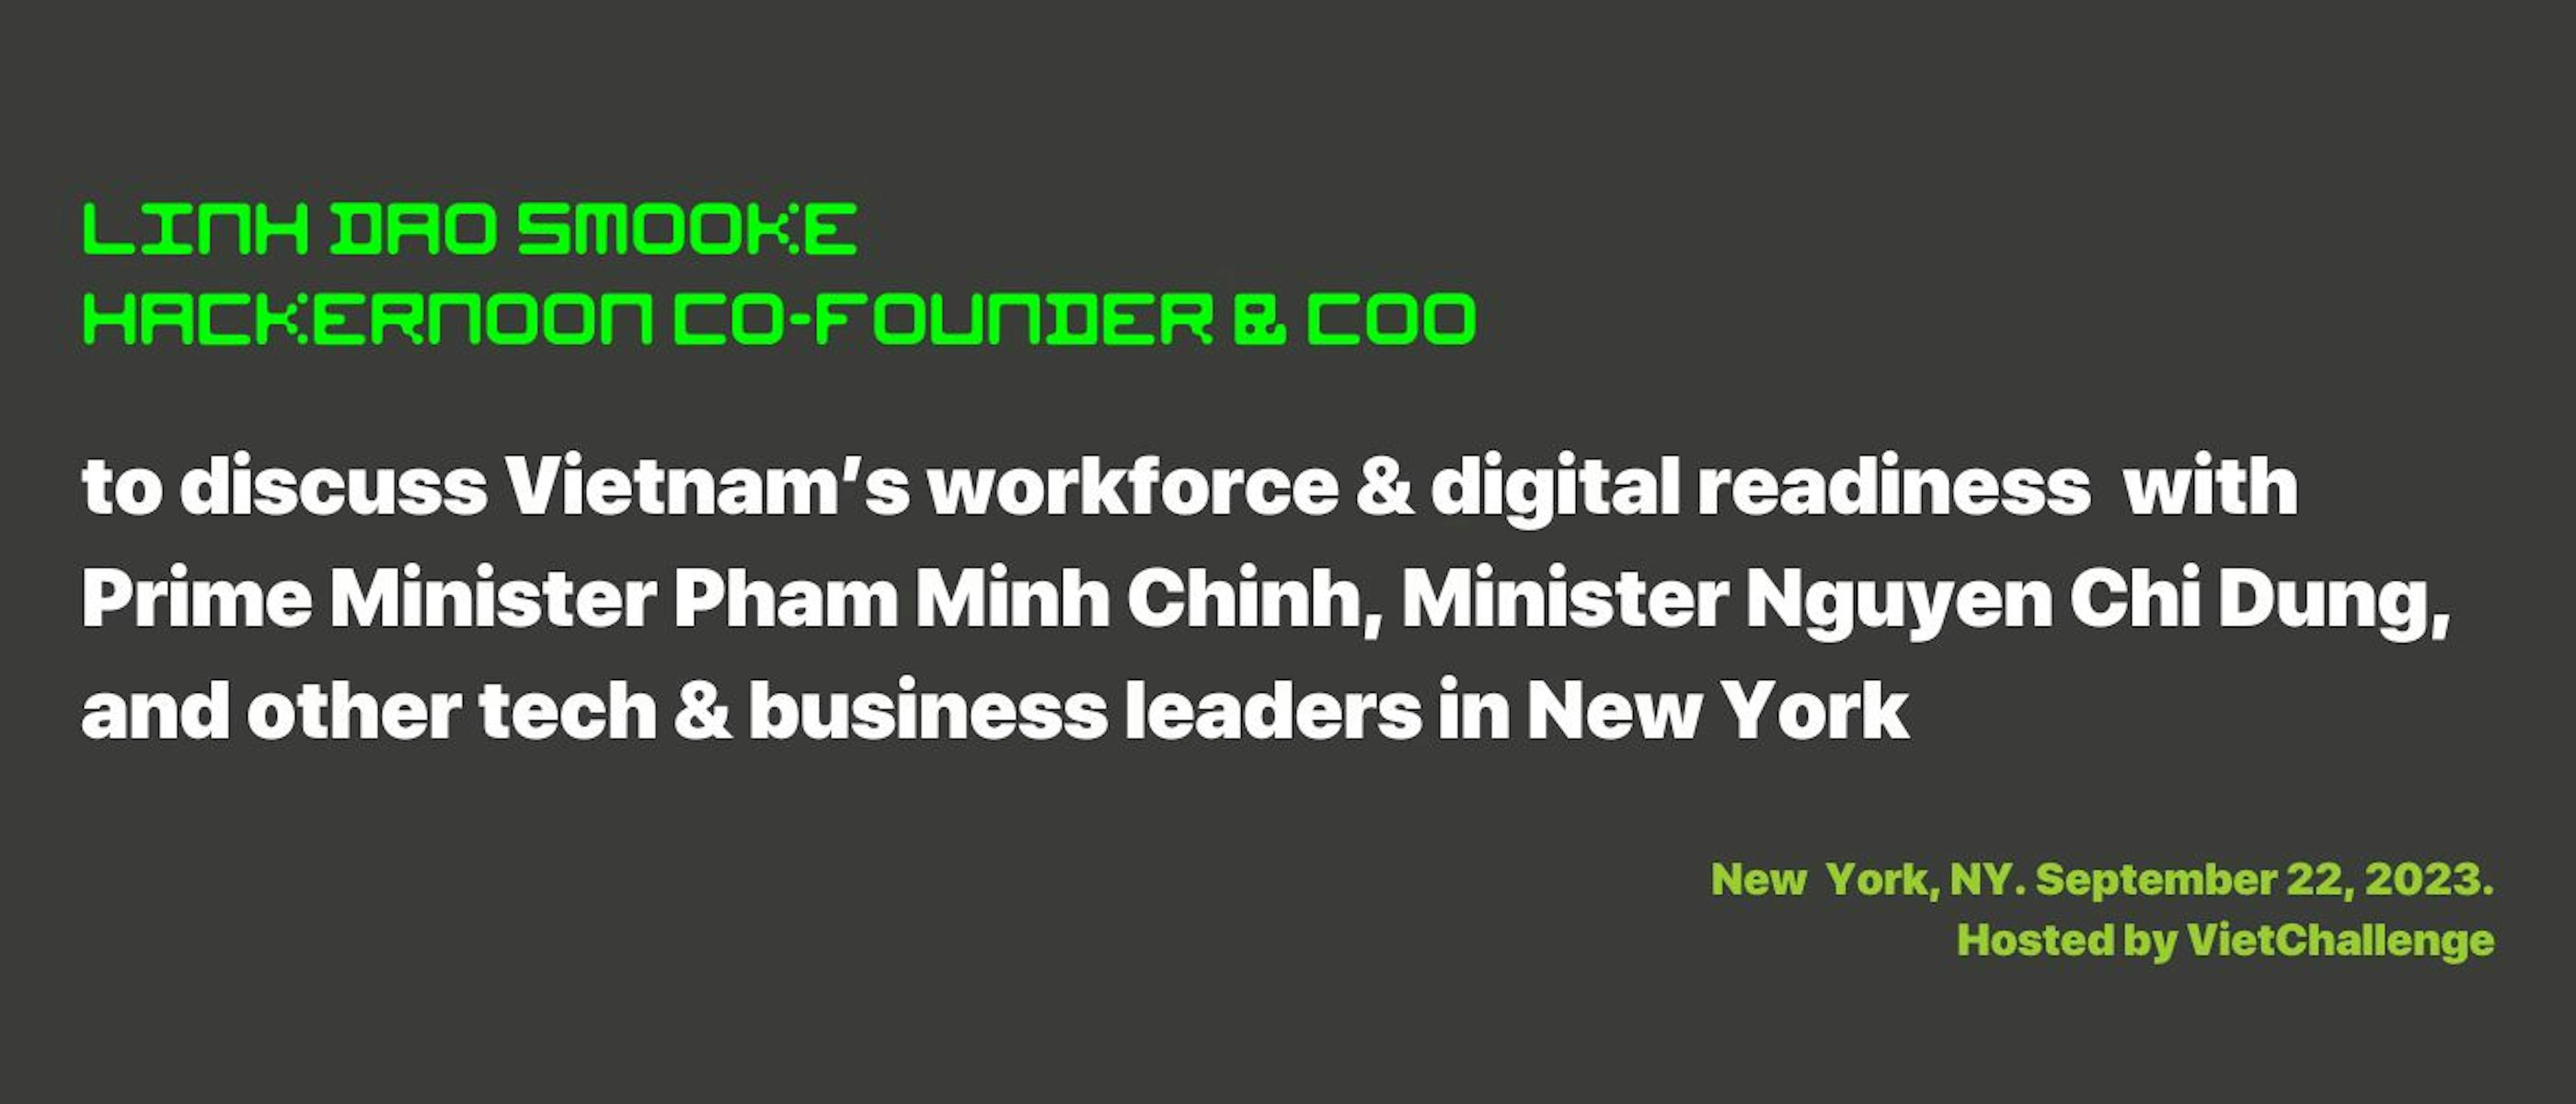 featured image - El director de operaciones de HackerNoon, Linh Dao Smooke, se reunirá con el primer ministro vietnamita, Pham Minh Chinh